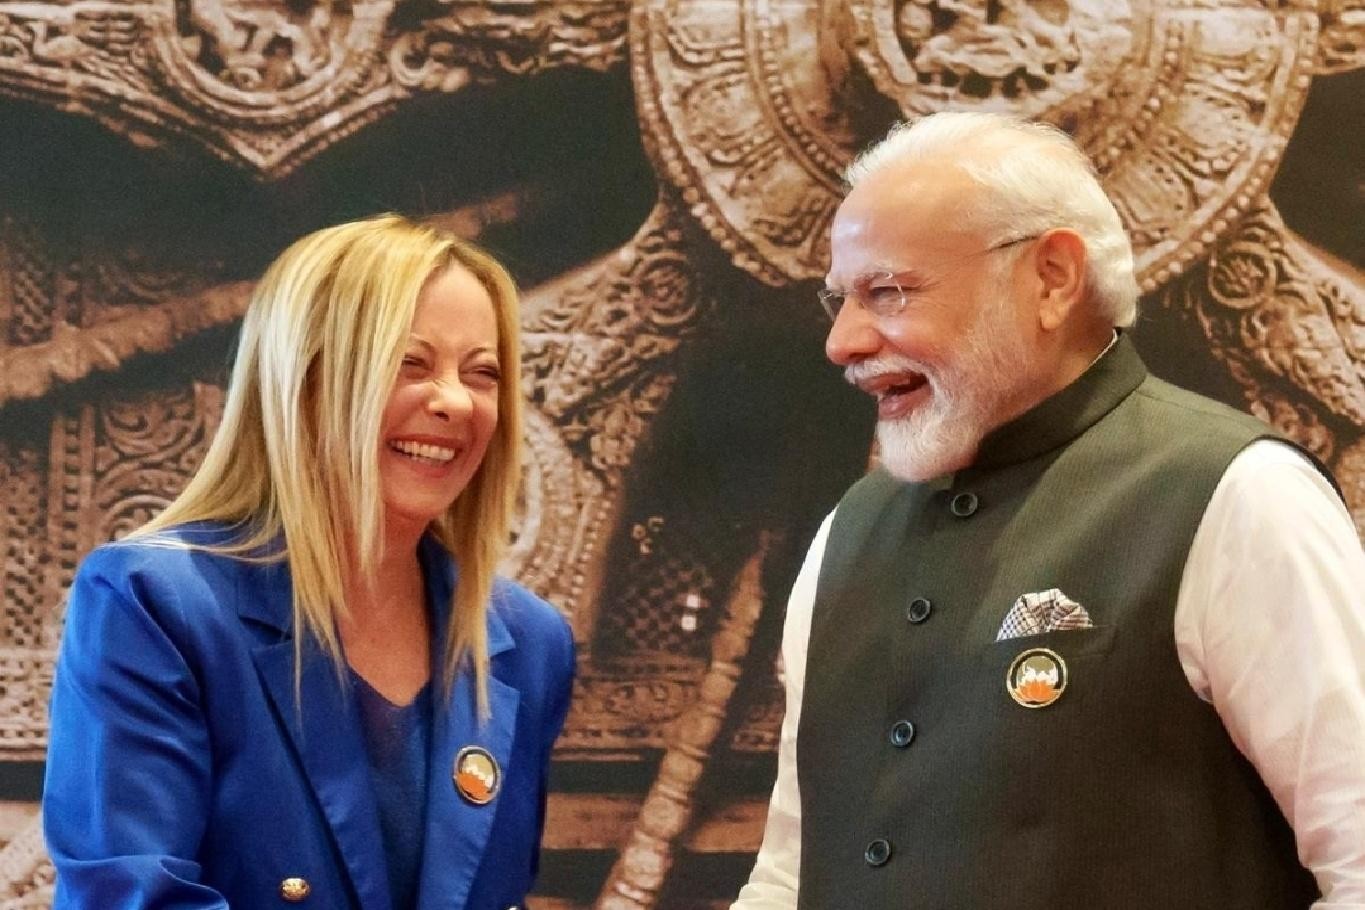 Italian PM congratulates PM Modi 